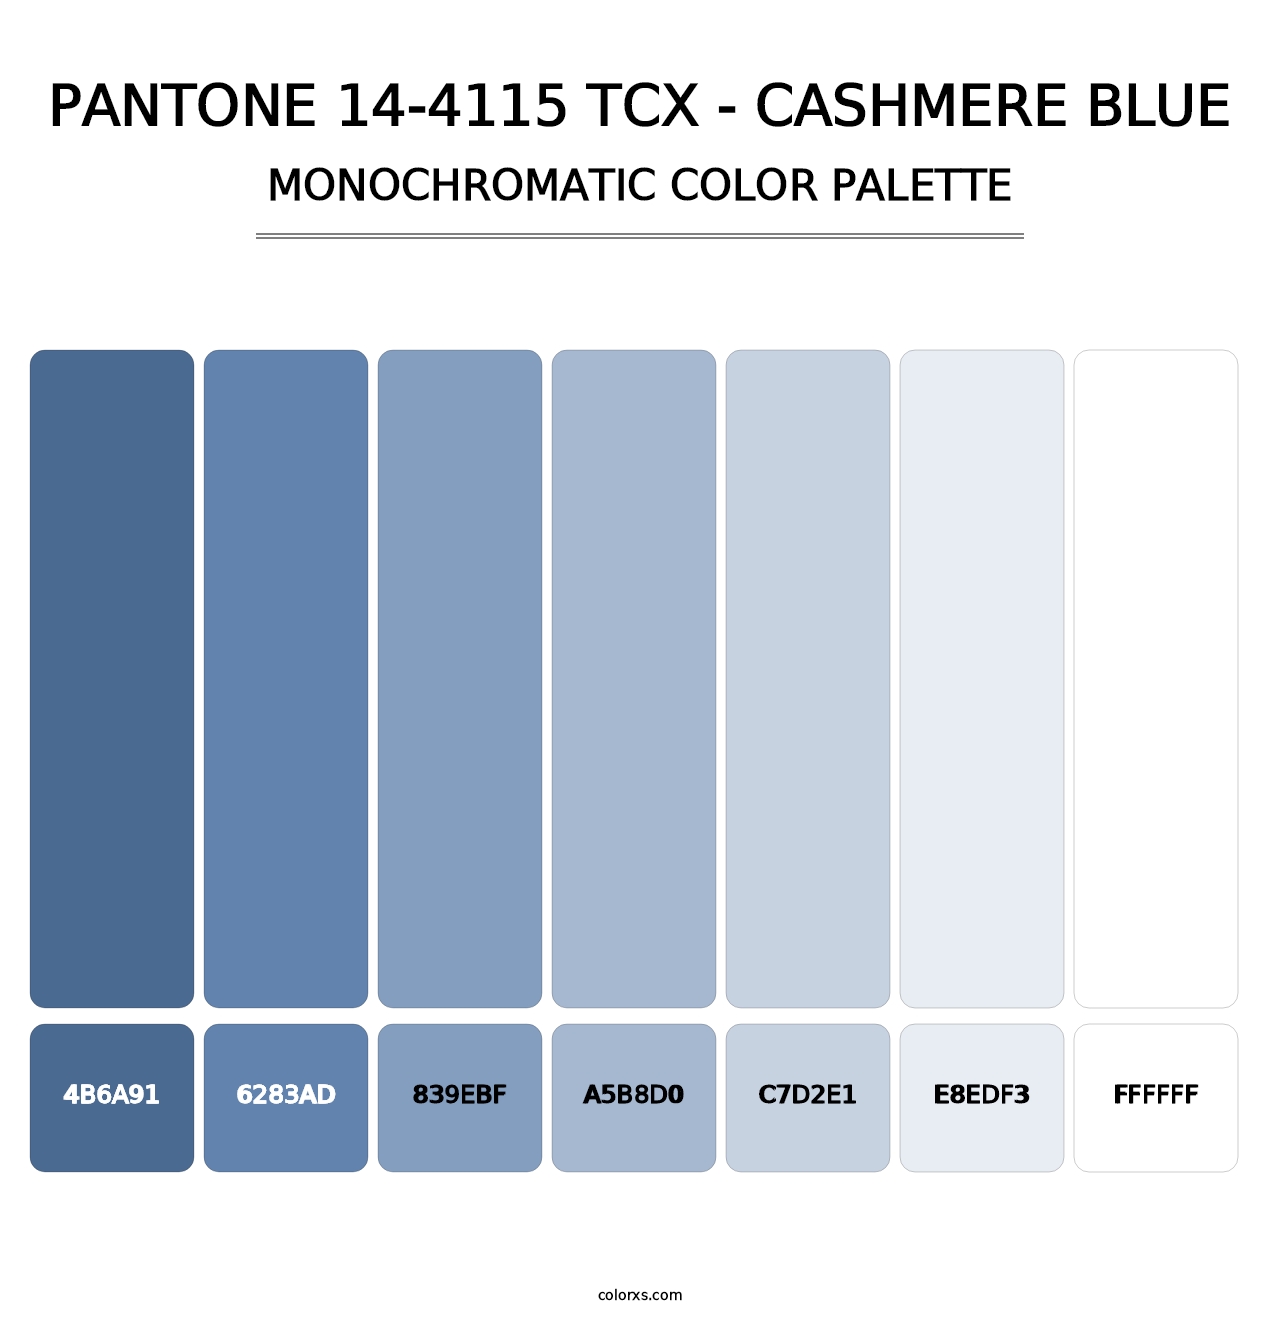 PANTONE 14-4115 TCX - Cashmere Blue - Monochromatic Color Palette